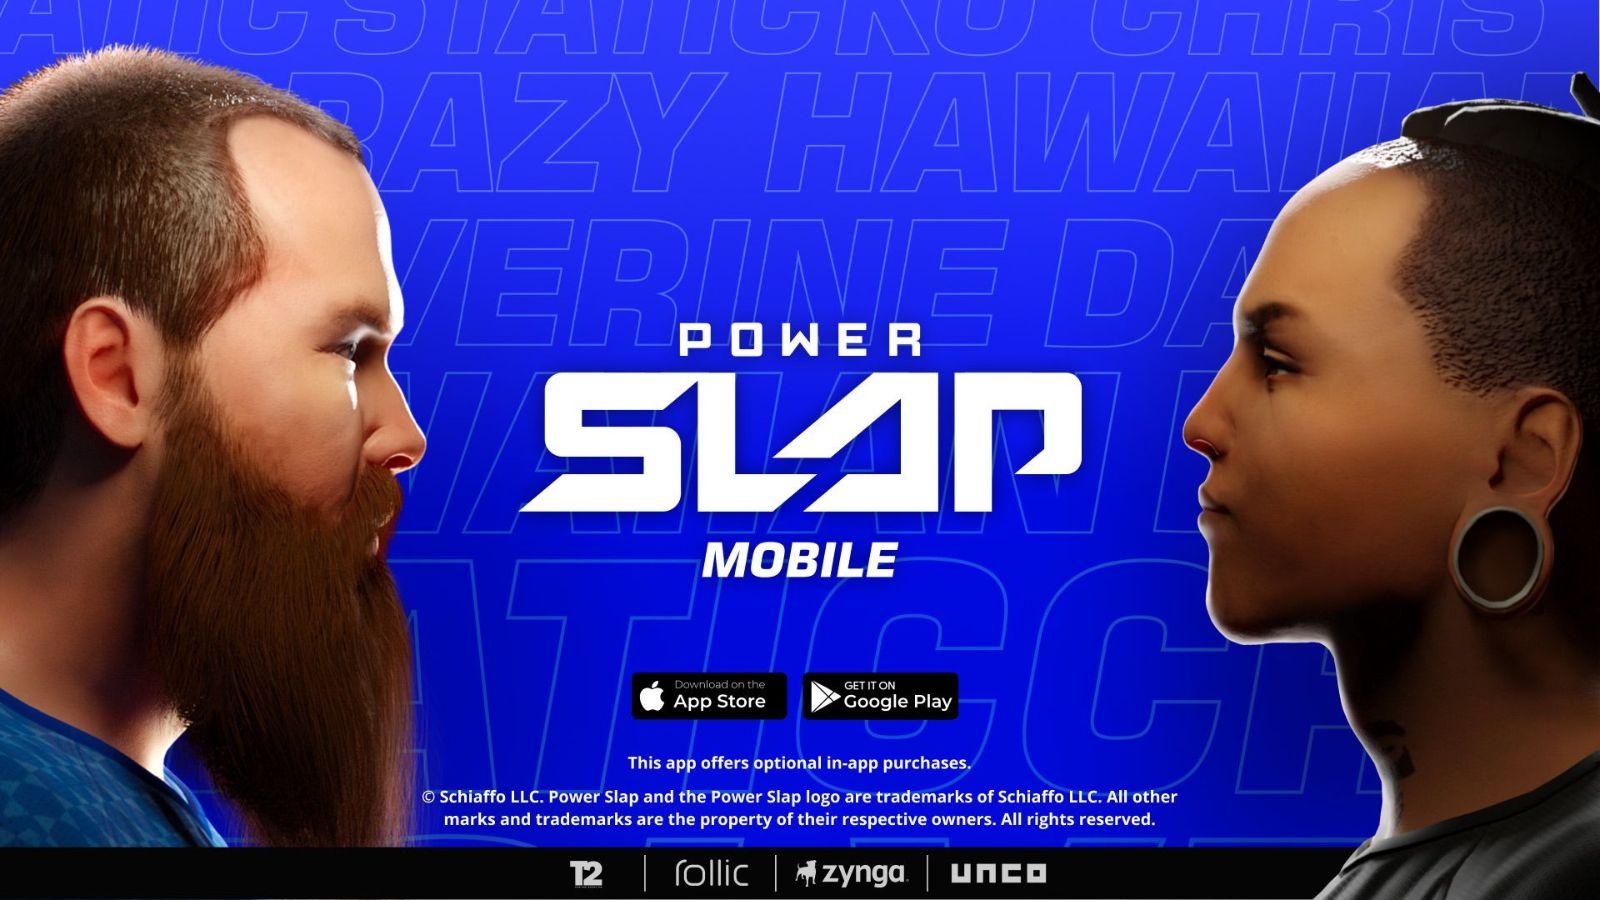 Power Slap Mobile